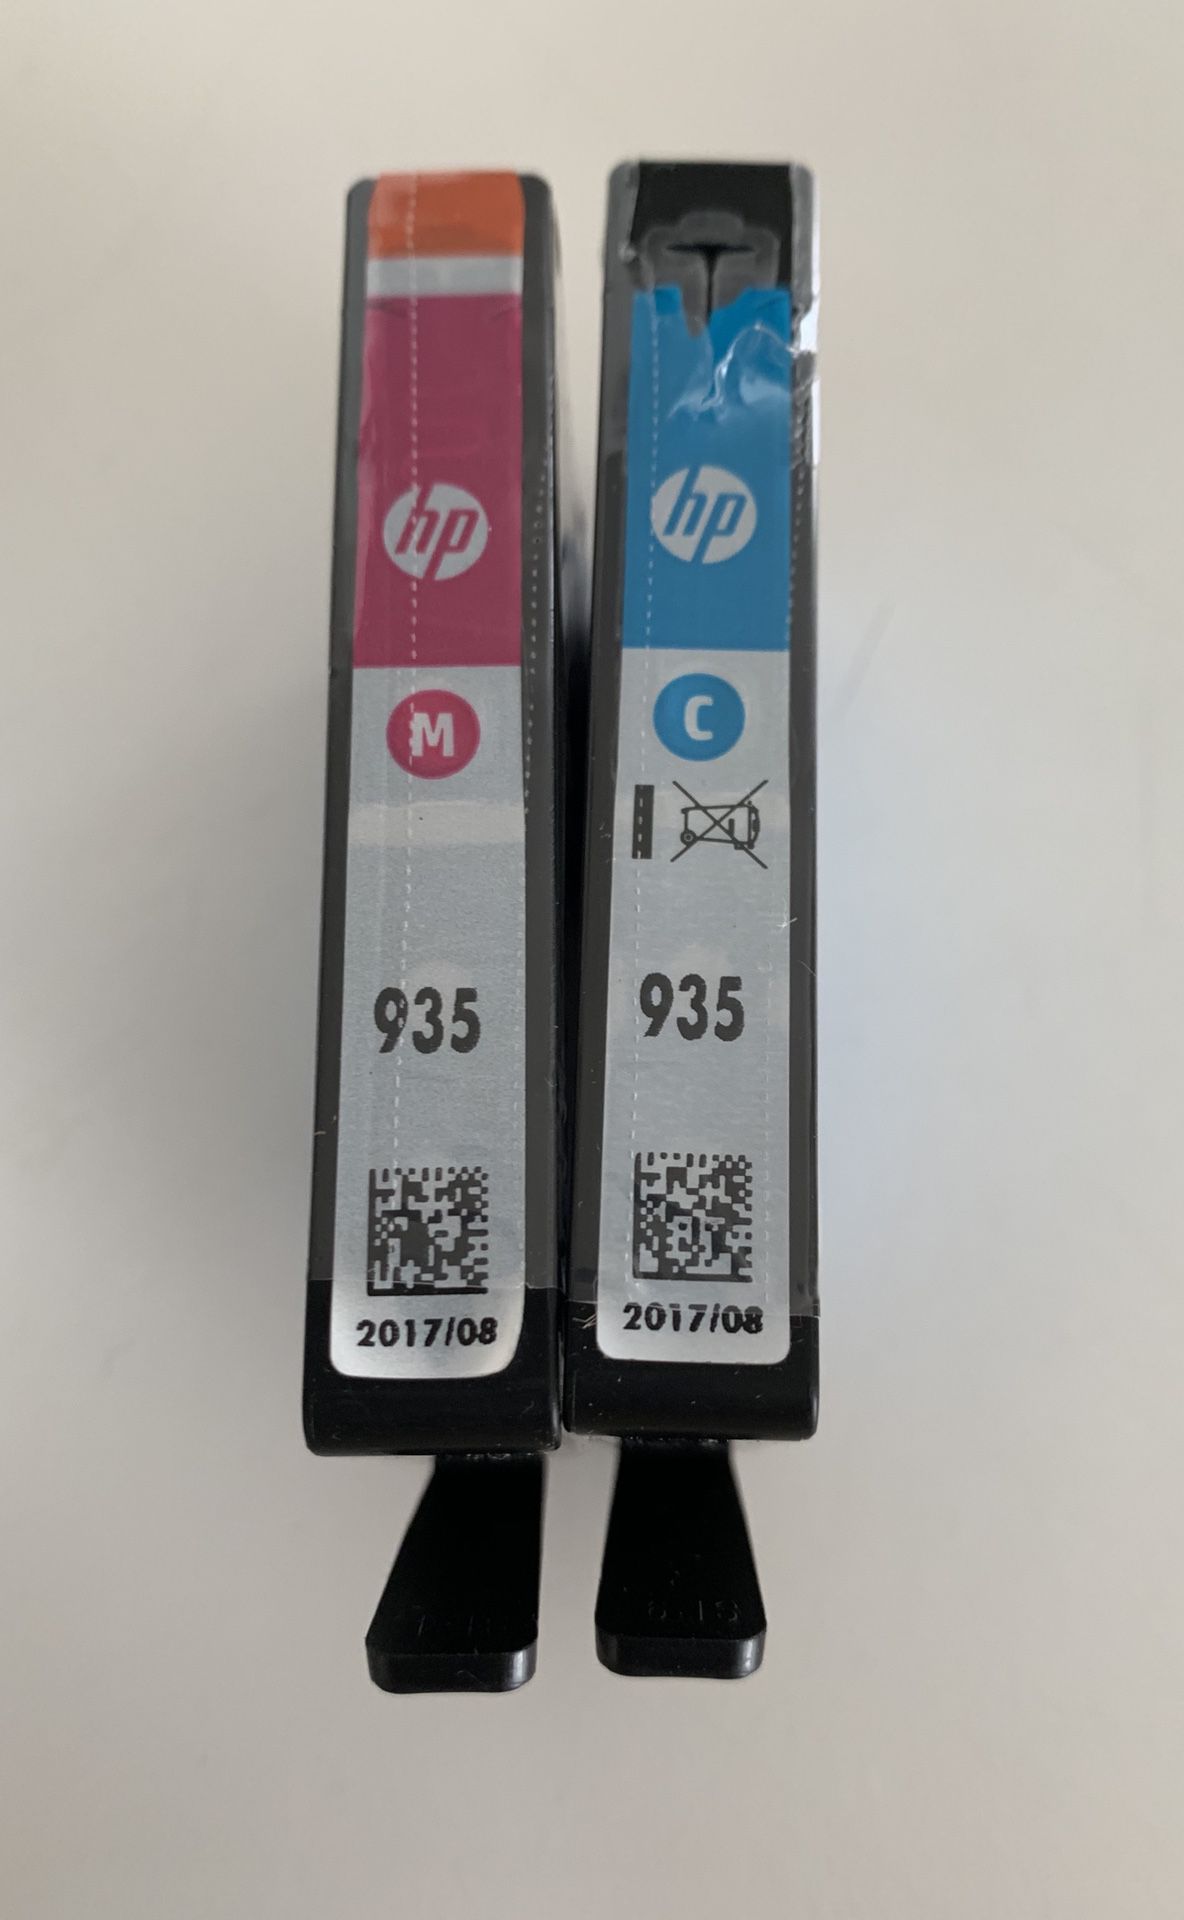 HP 935 Ink Magenta and Cyan